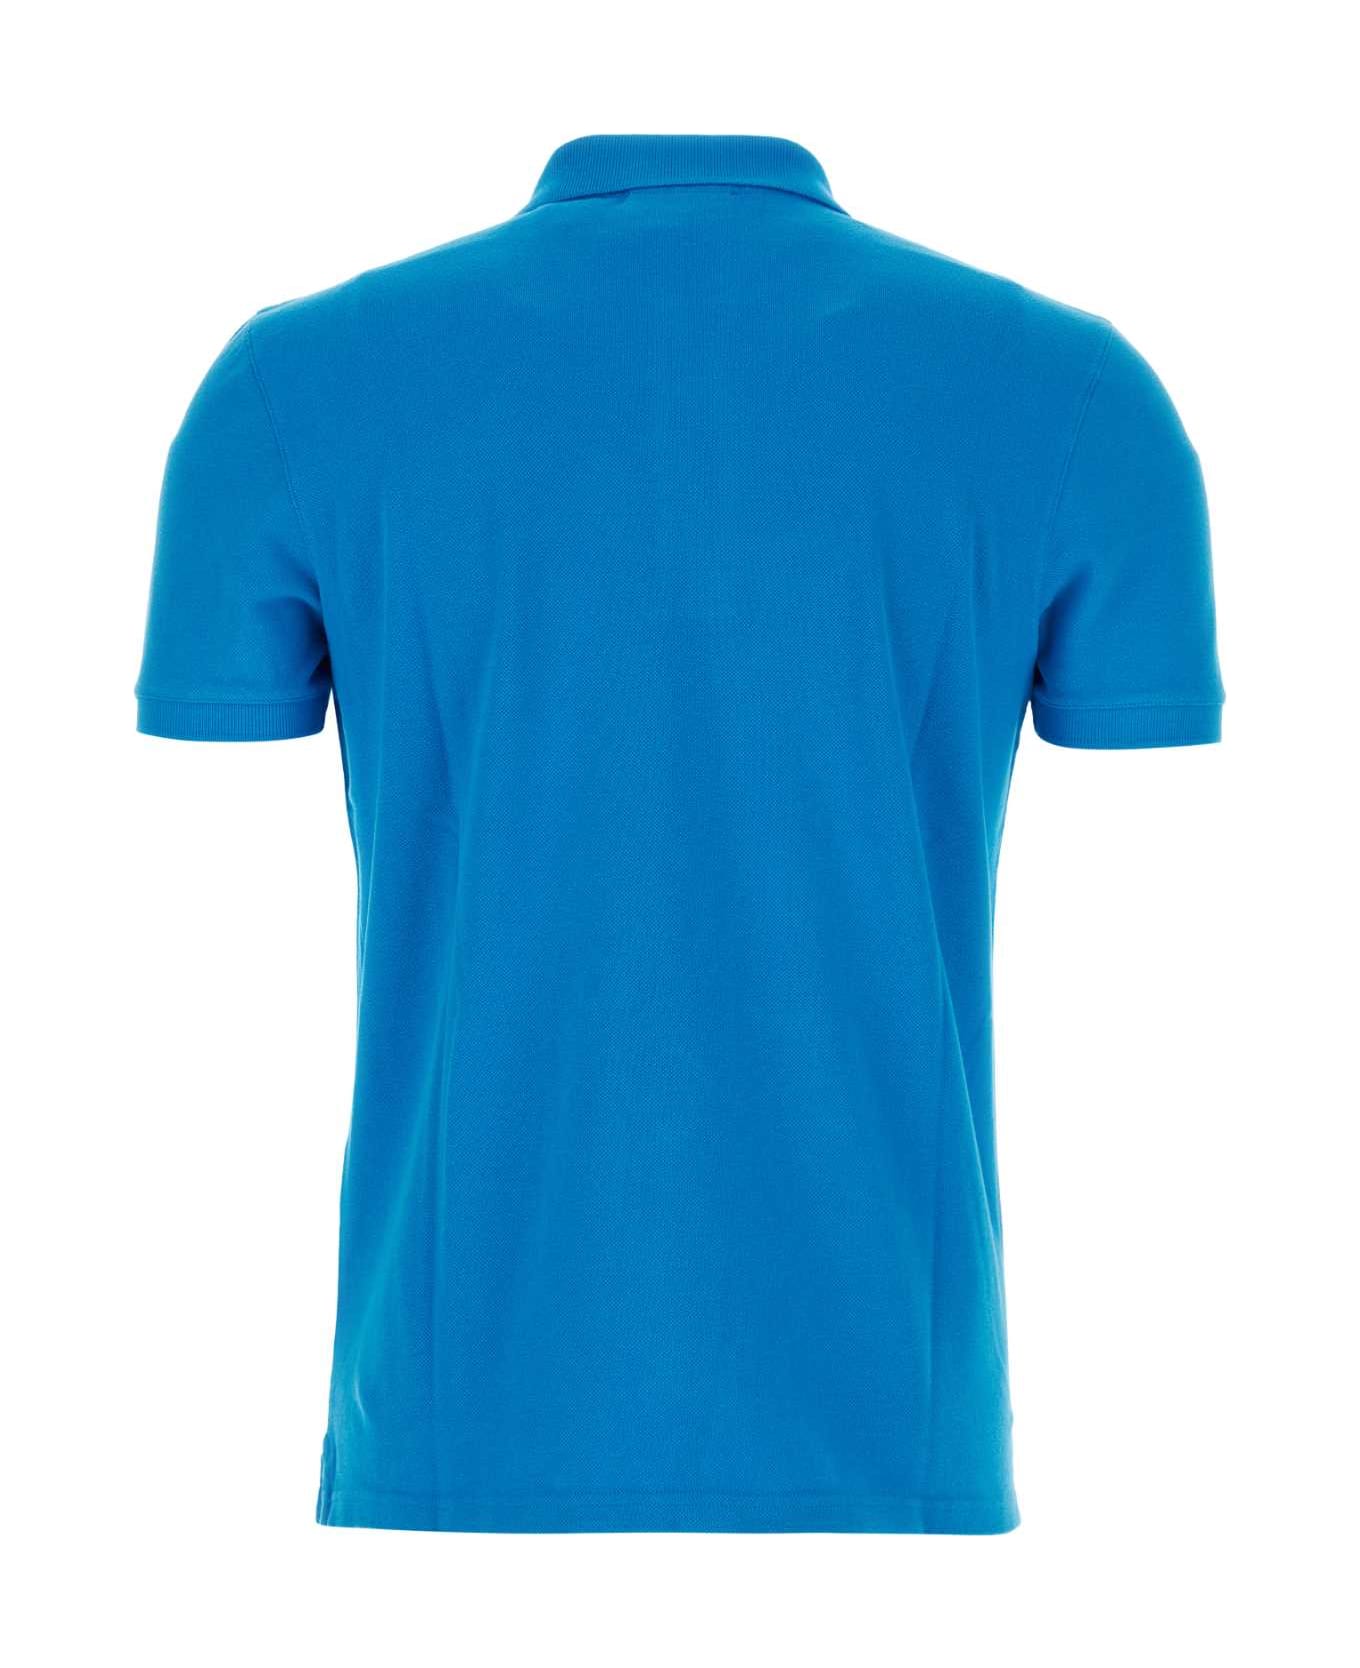 Maison Kitsuné Turquoise Piquet Polo Shirt - ENAMELBLUE